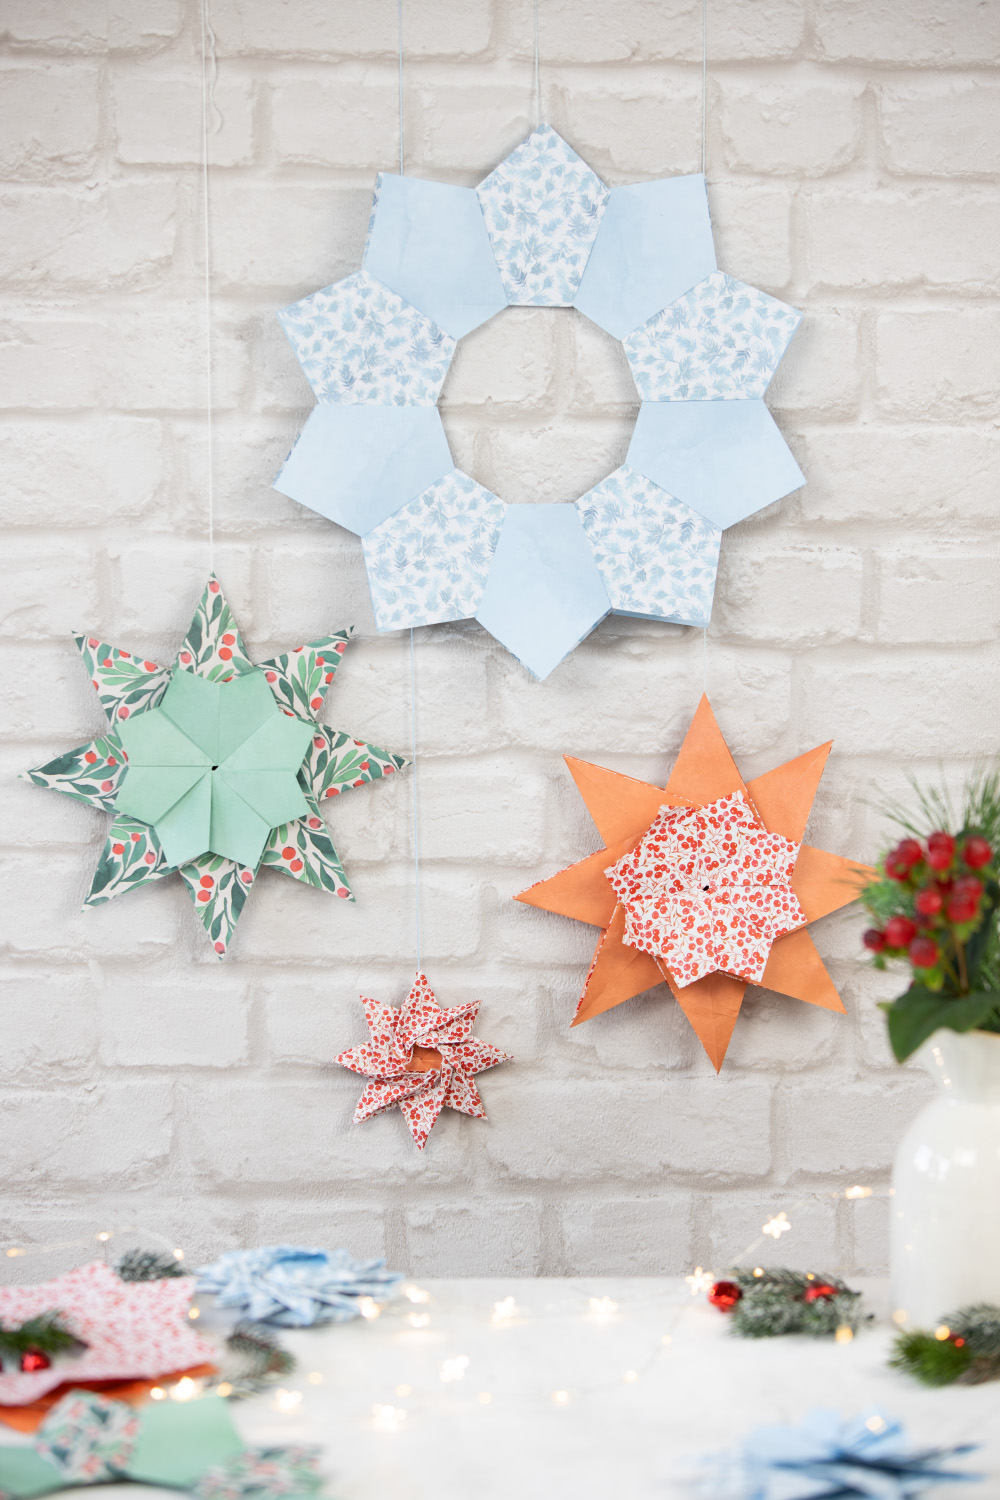 DIY Papier-Sterne selberbasteln mit folia #14TageWeihnachten